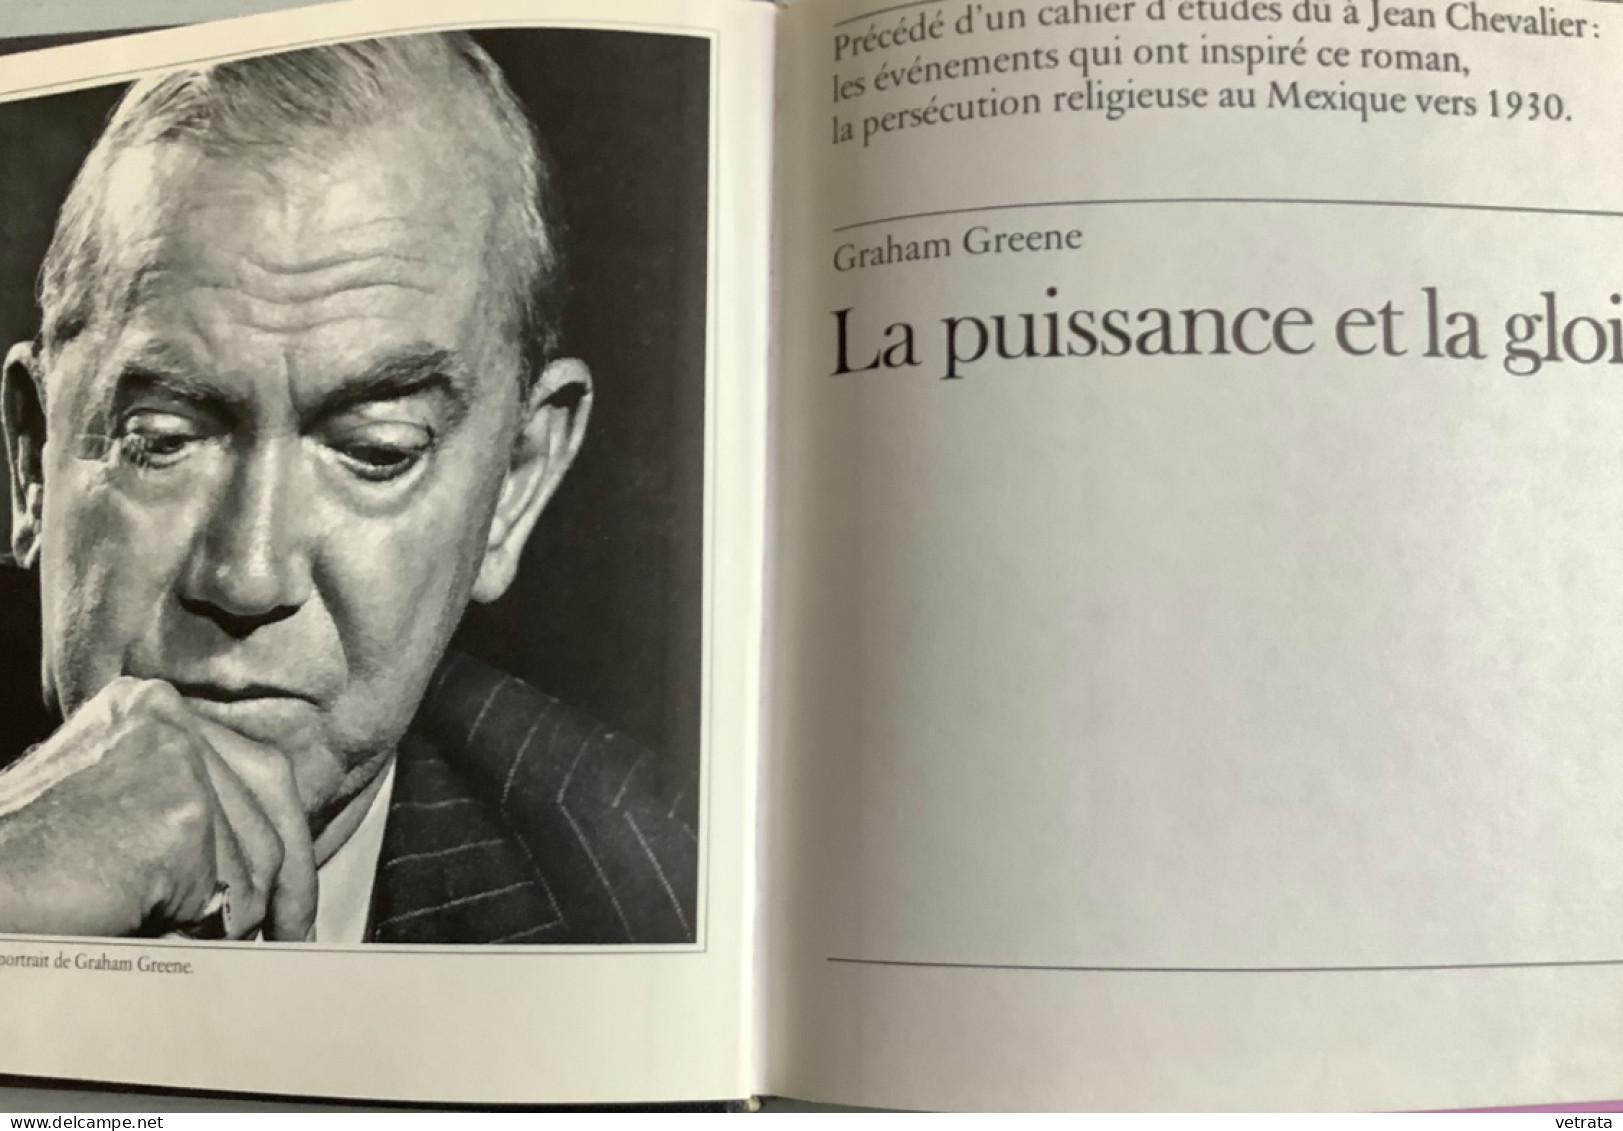 6 Livres de Graham Greene format poche (Tueur à gages-Le 3ème homme-Une sorte de vie-Le ministère de la peur-La saison d